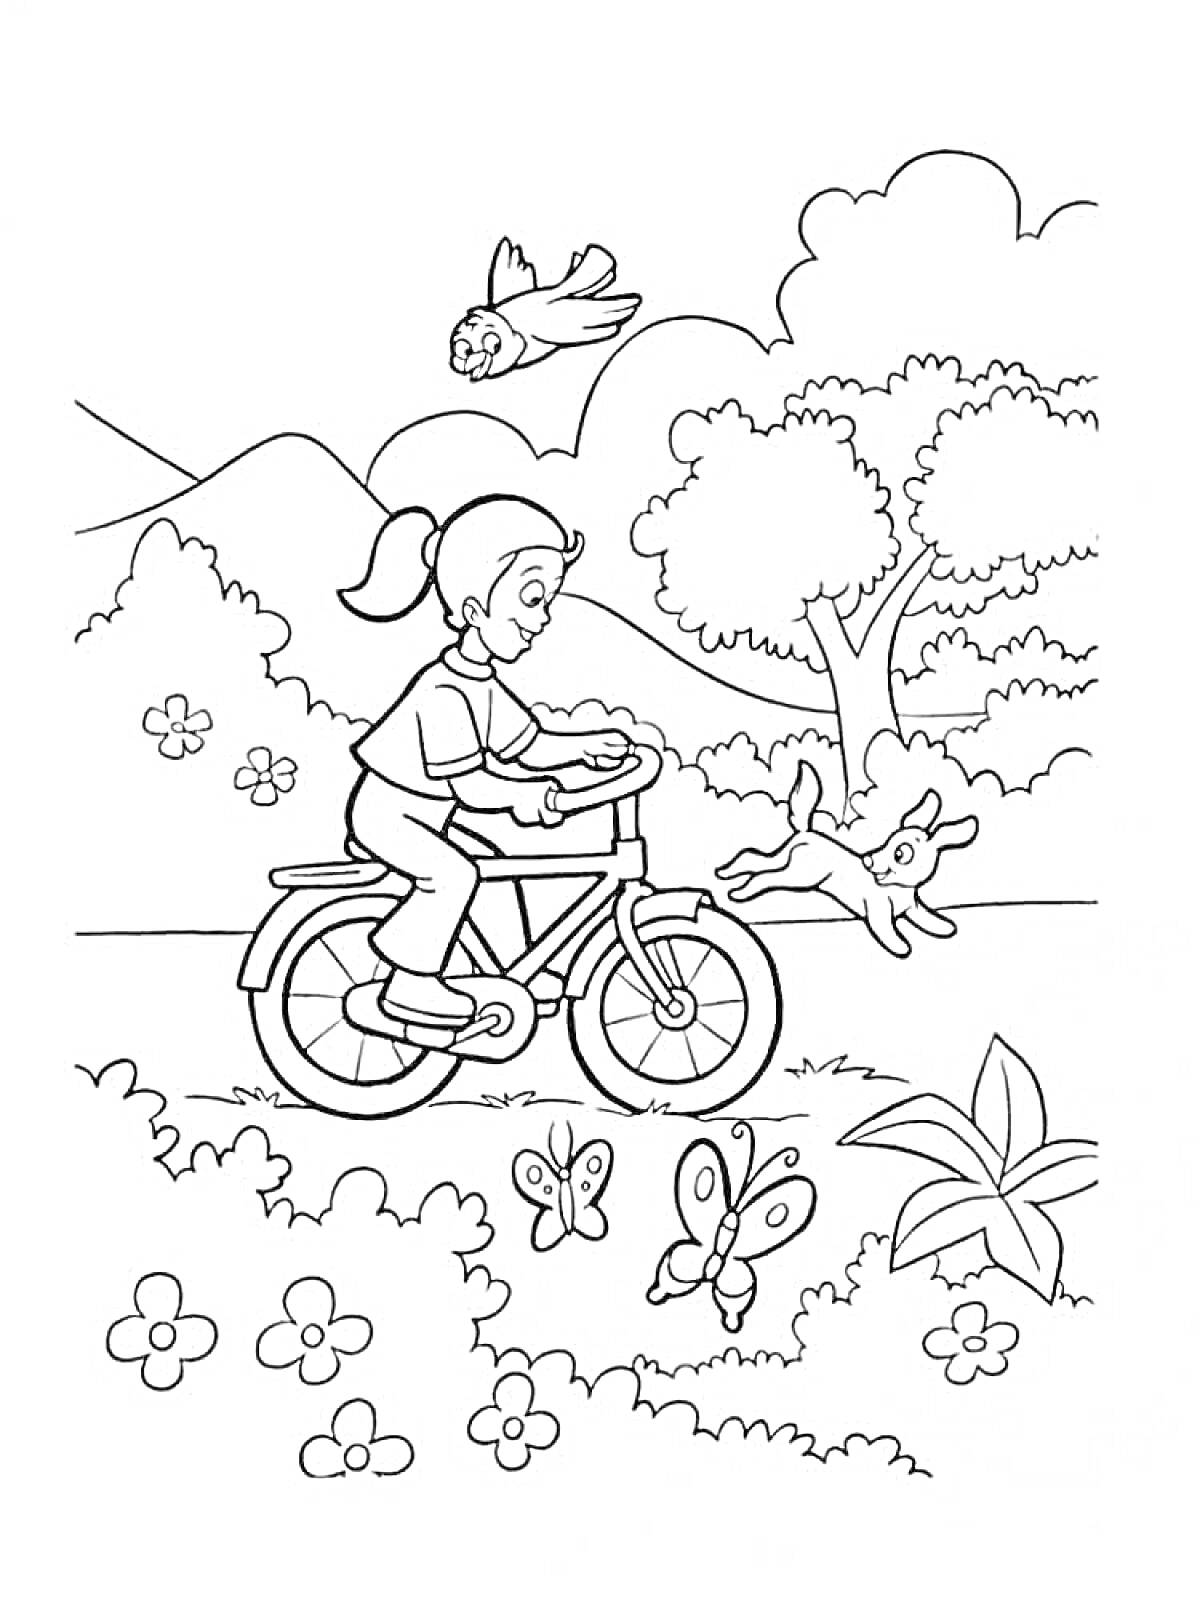 Раскраска Девочка едет на велосипеде в парке с деревьями, цветами, бабочками, собакой и птицей.